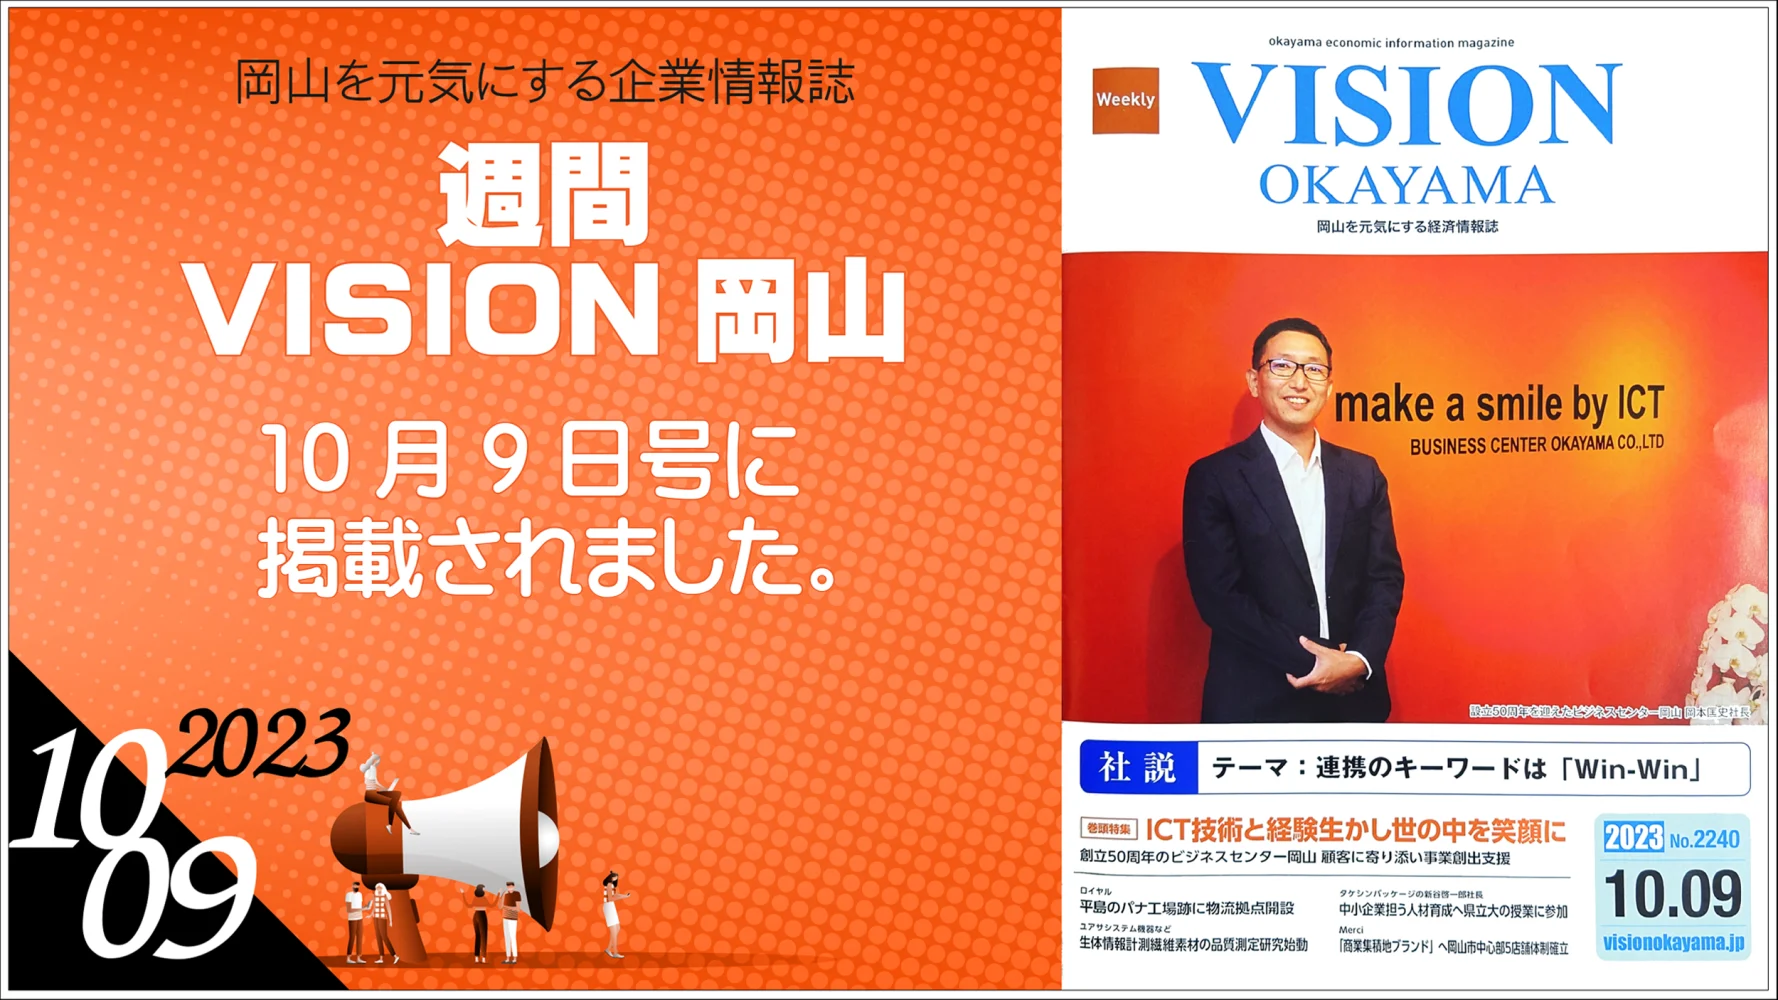 「週刊 VISION岡山」に掲載されました